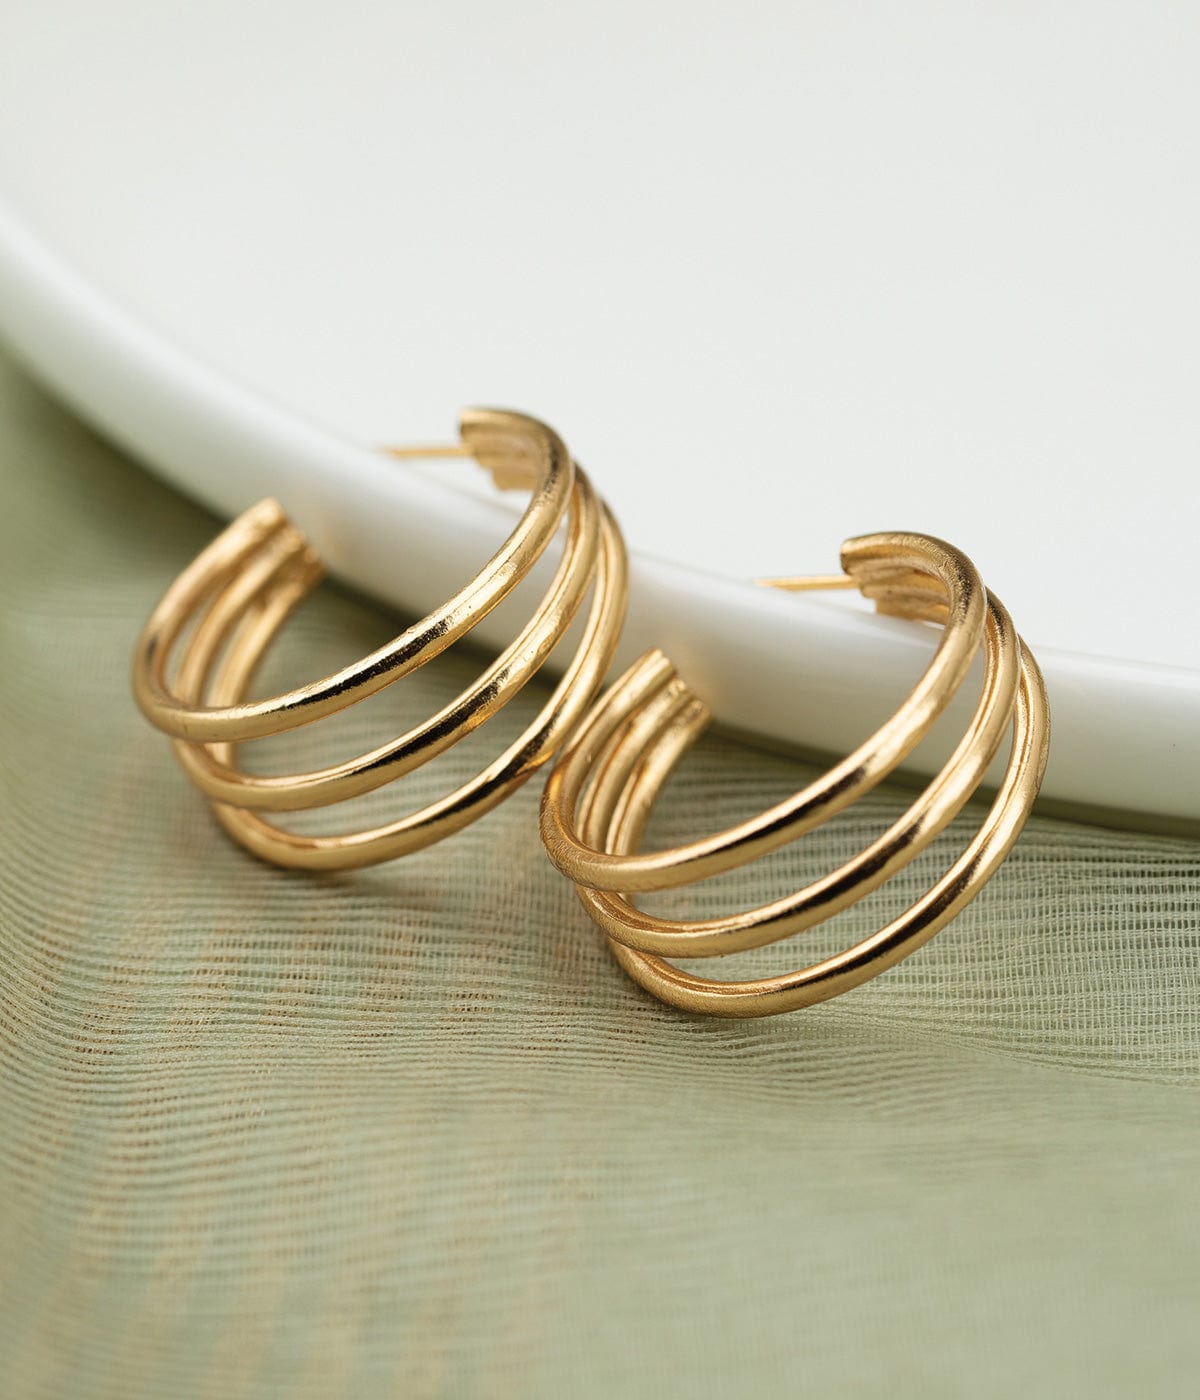 Johi 22k Gold Plated On Brass Impactful Design Earrings - ZEWAR Jewelry